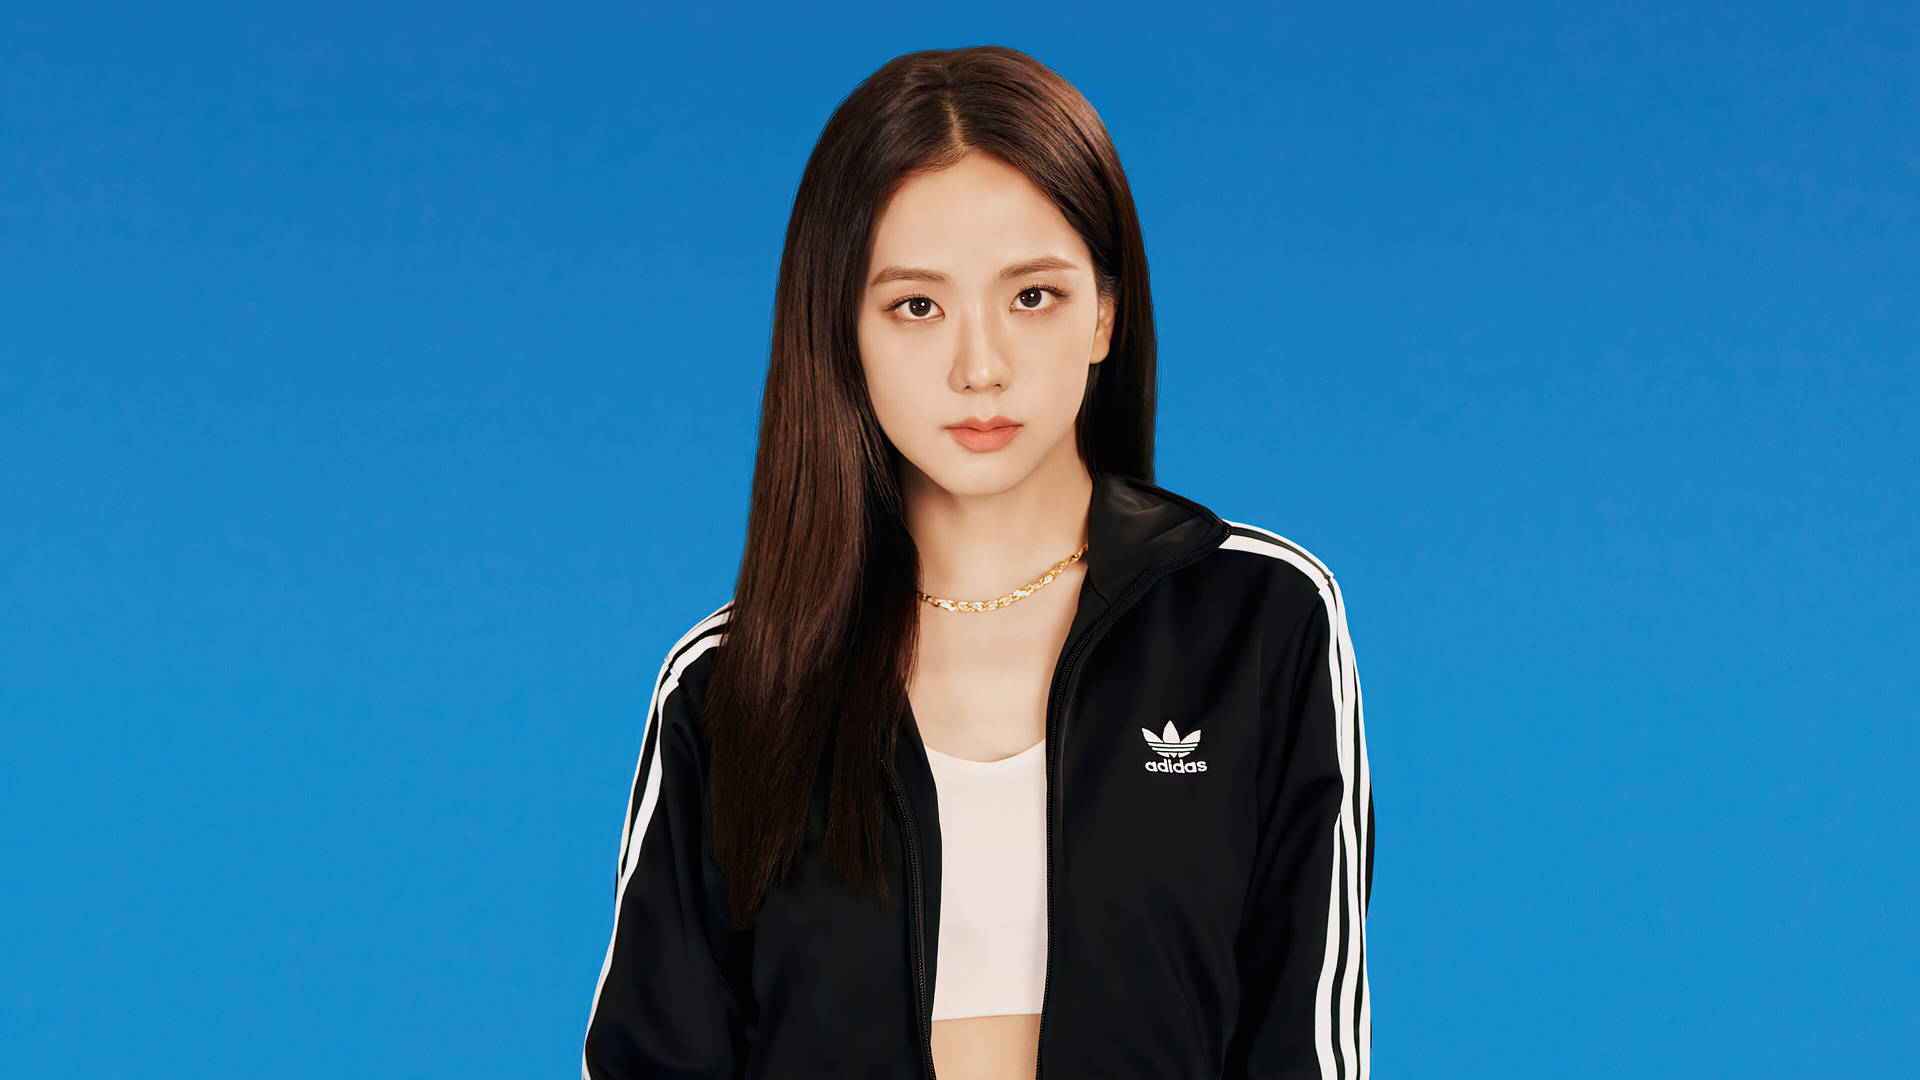 Kim Jisoo Adidas 2020 Background